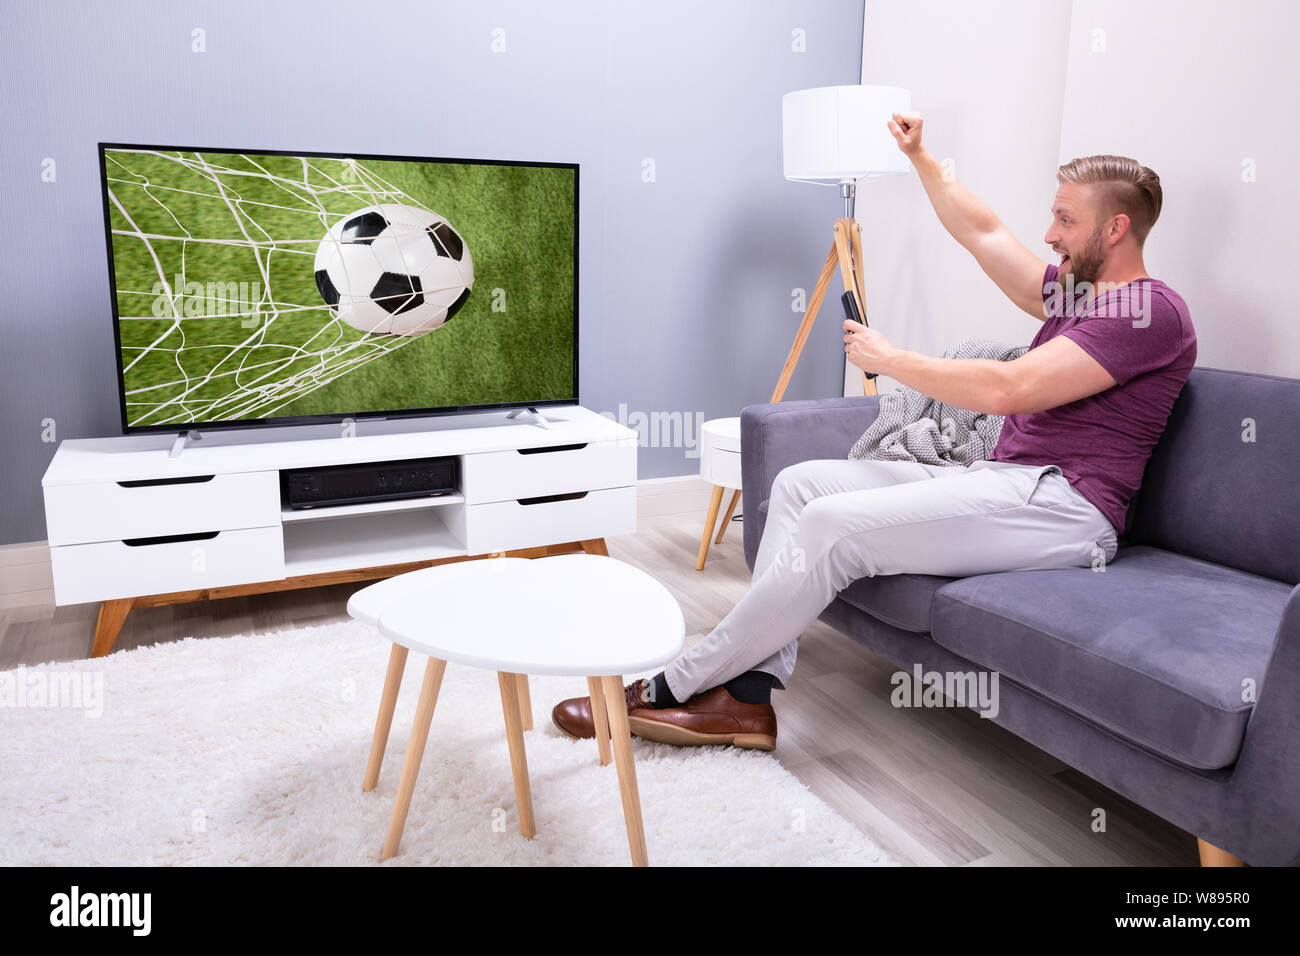 Partido de futbol tv fotografías e imágenes de alta resolución - Alamy